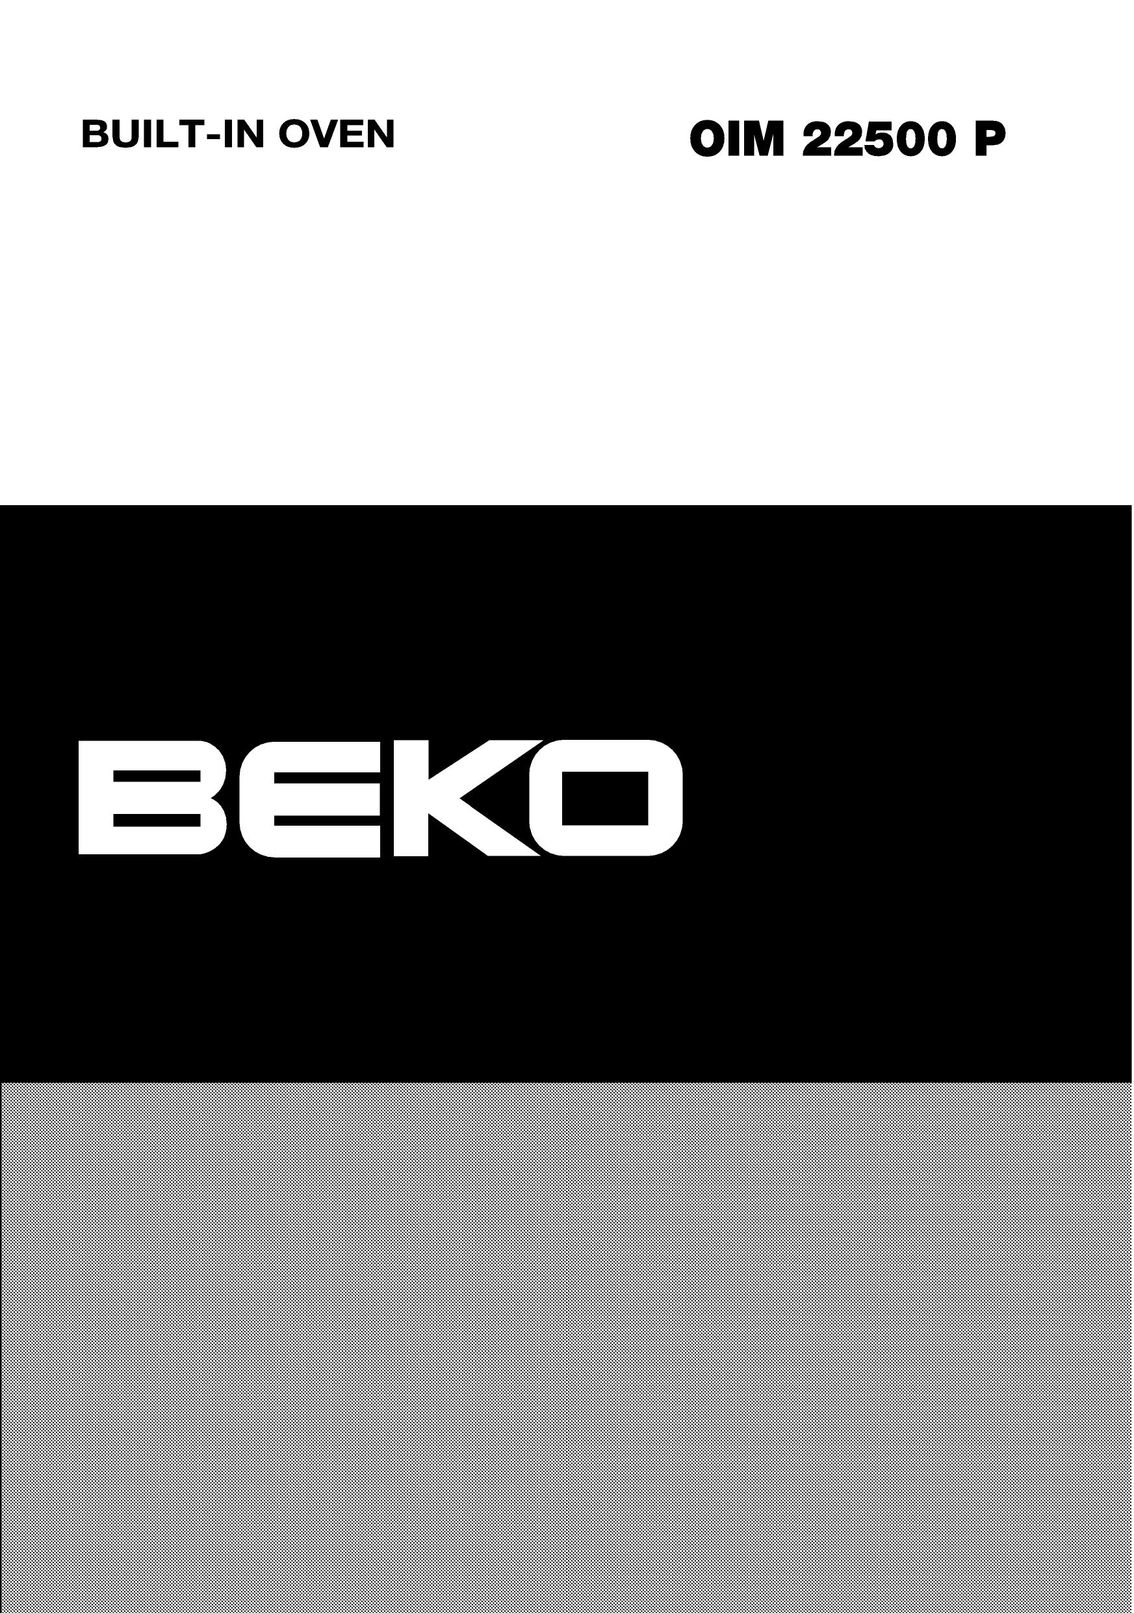 Beko OIM22500P Oven User Manual